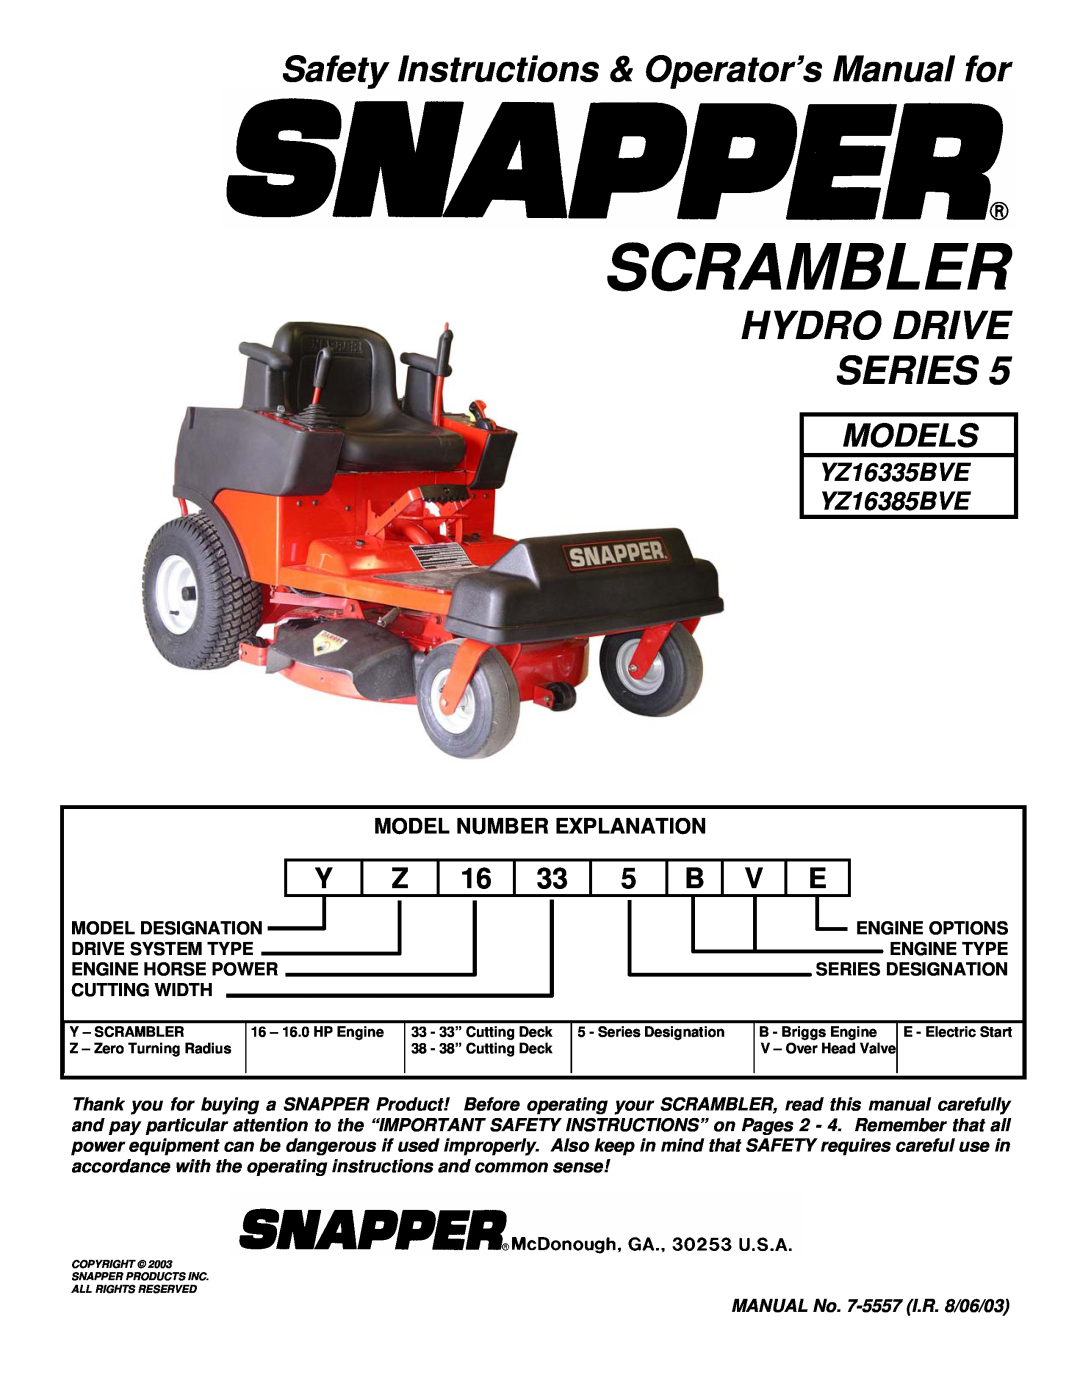 Snapper YZ16385BVE, YZ16385BVE important safety instructions Safety Instructions & Operator’s Manual for, Scrambler 